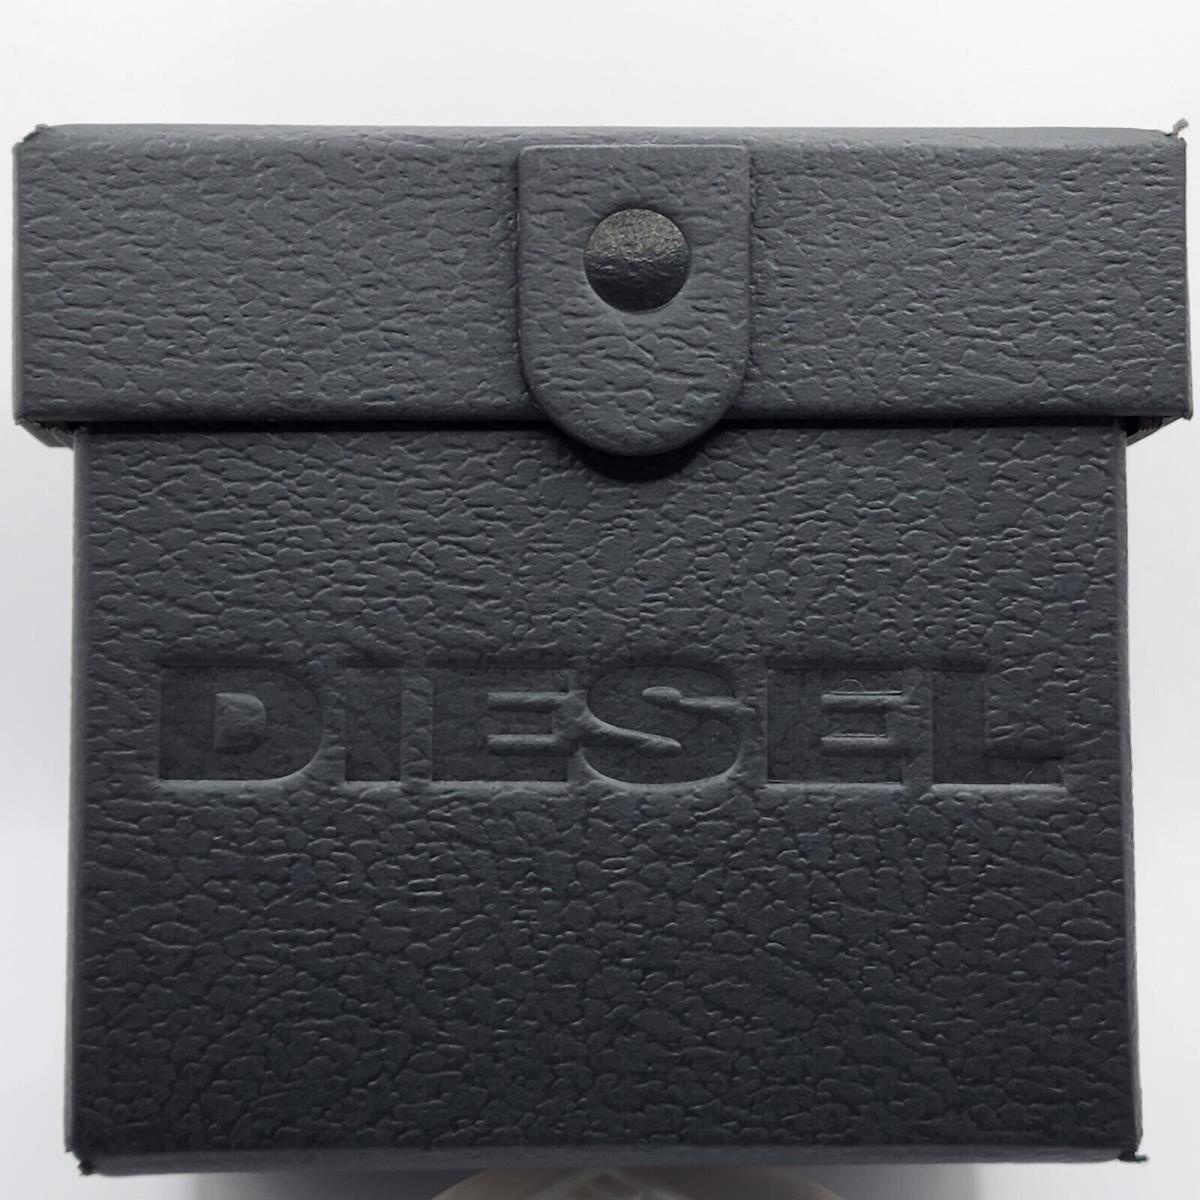 Diesel DZ4586 Diesel 698615143436 watch Griffed Chronograph Gunmetal-tone Men`s Fash | Watch Stainless - Steel - Brands